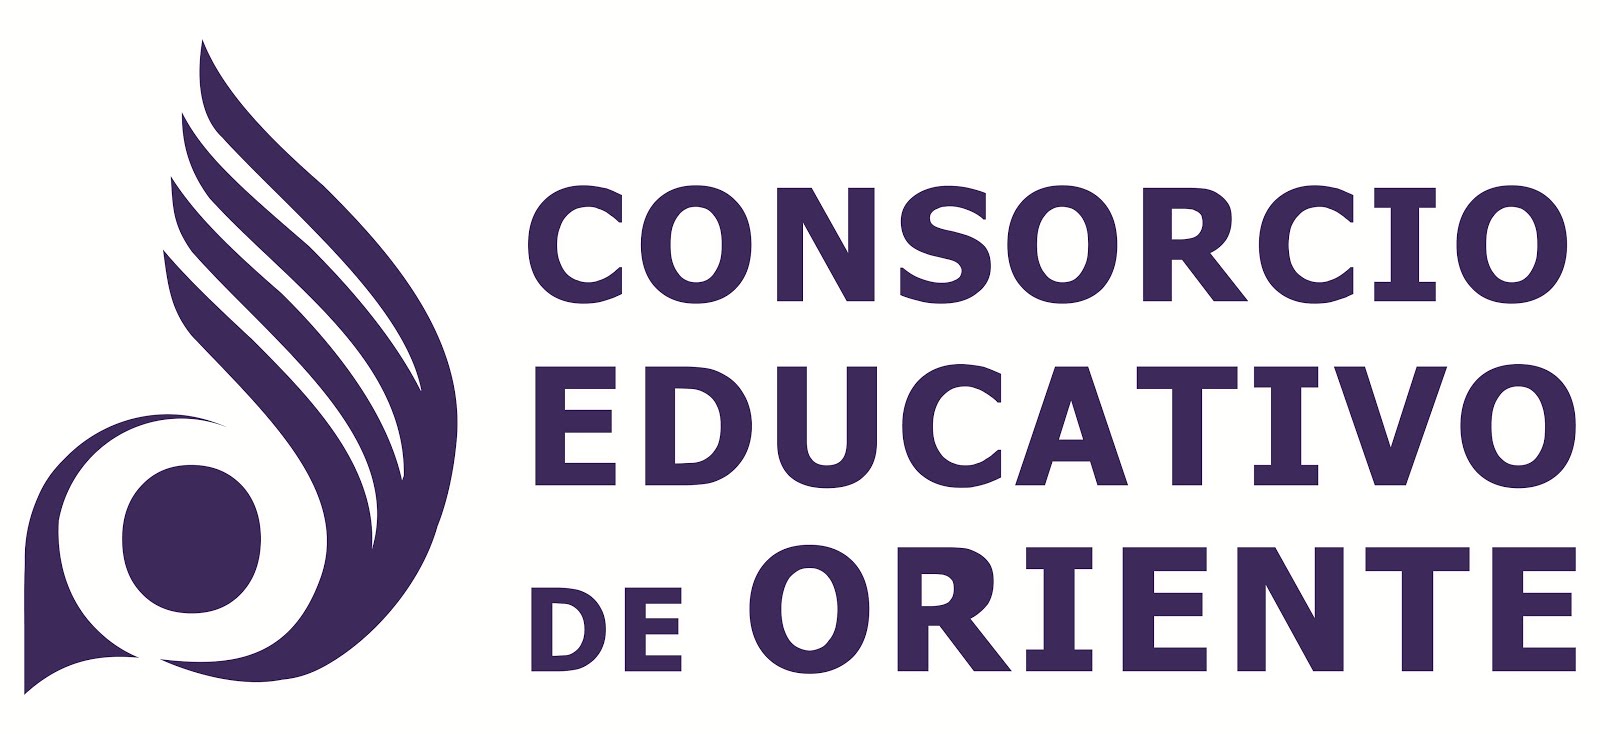 CONSORCIO EDUCATIVO DE ORIENTE